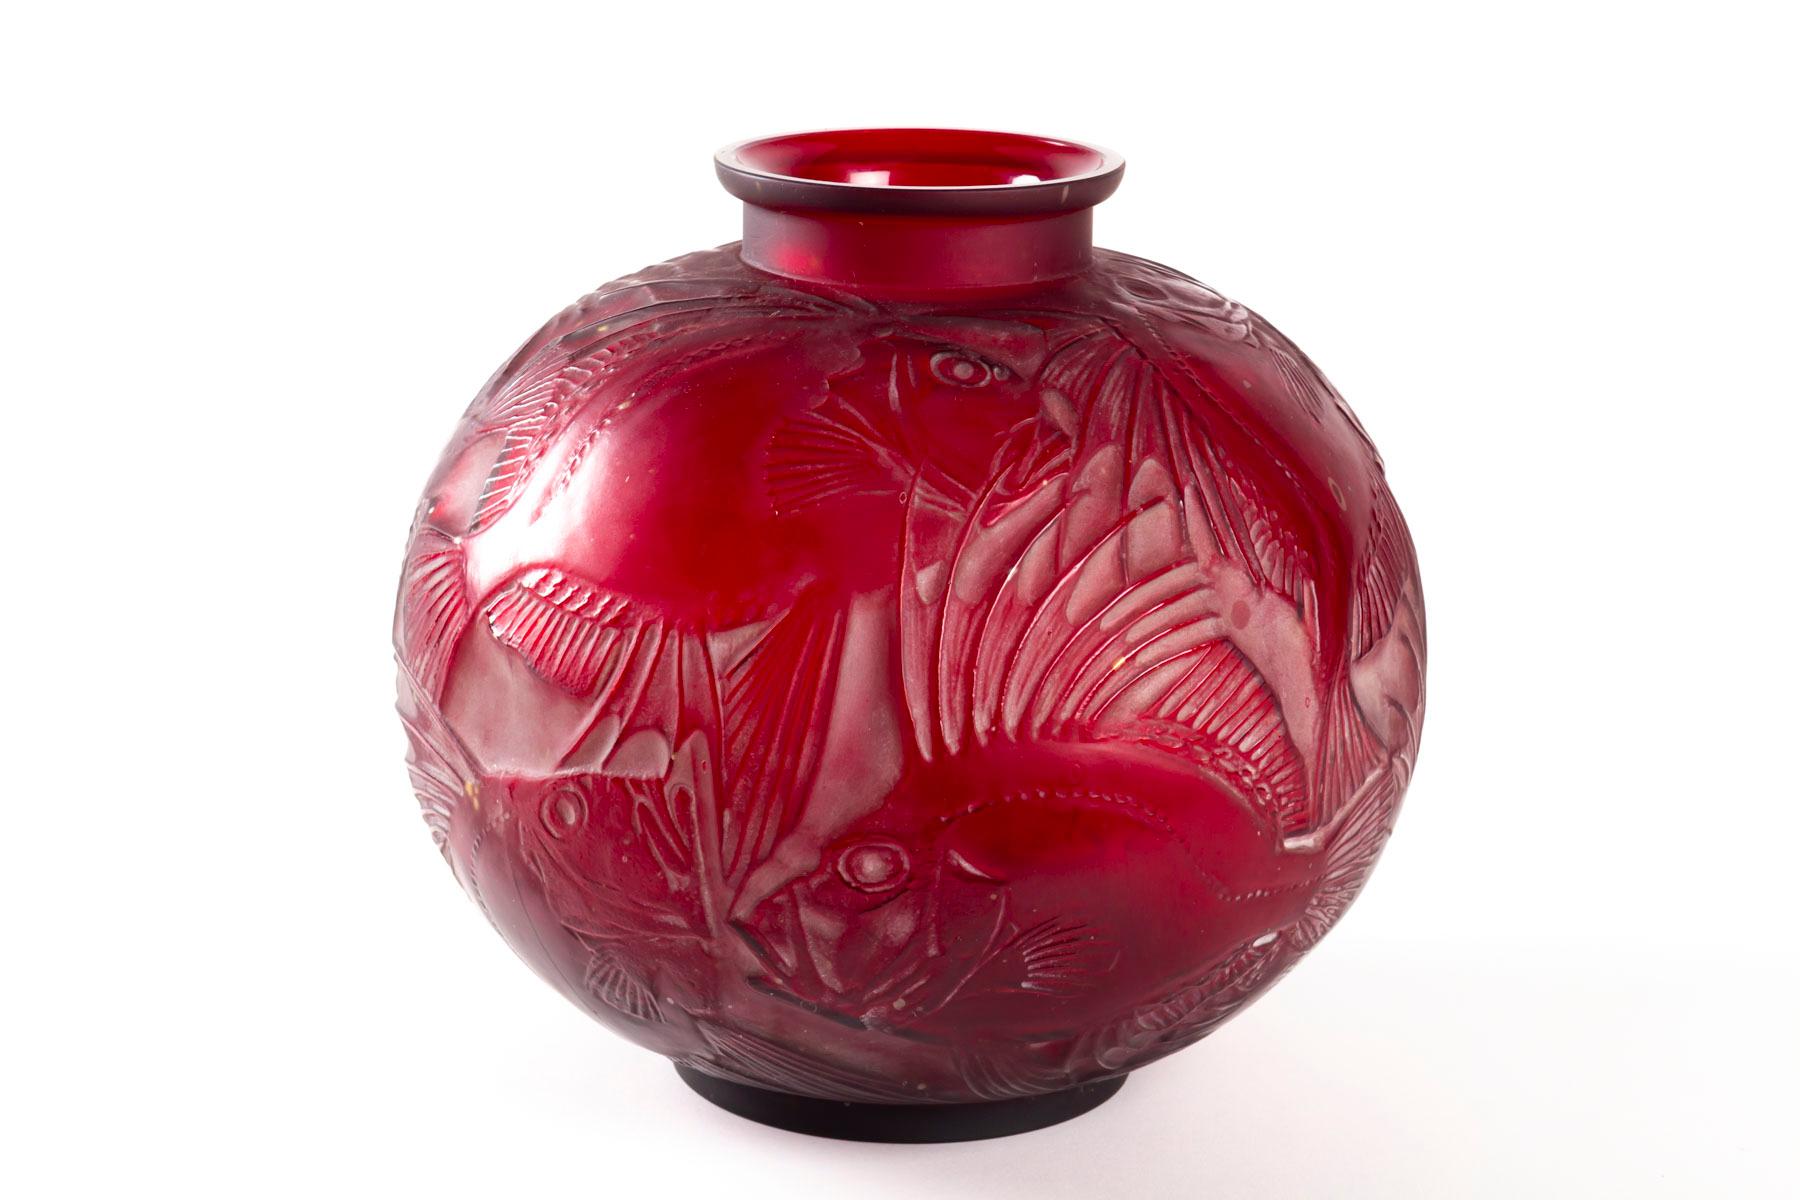 Art Deco 1921 René Lalique Poissons Vase Cased Red Cherry Glass